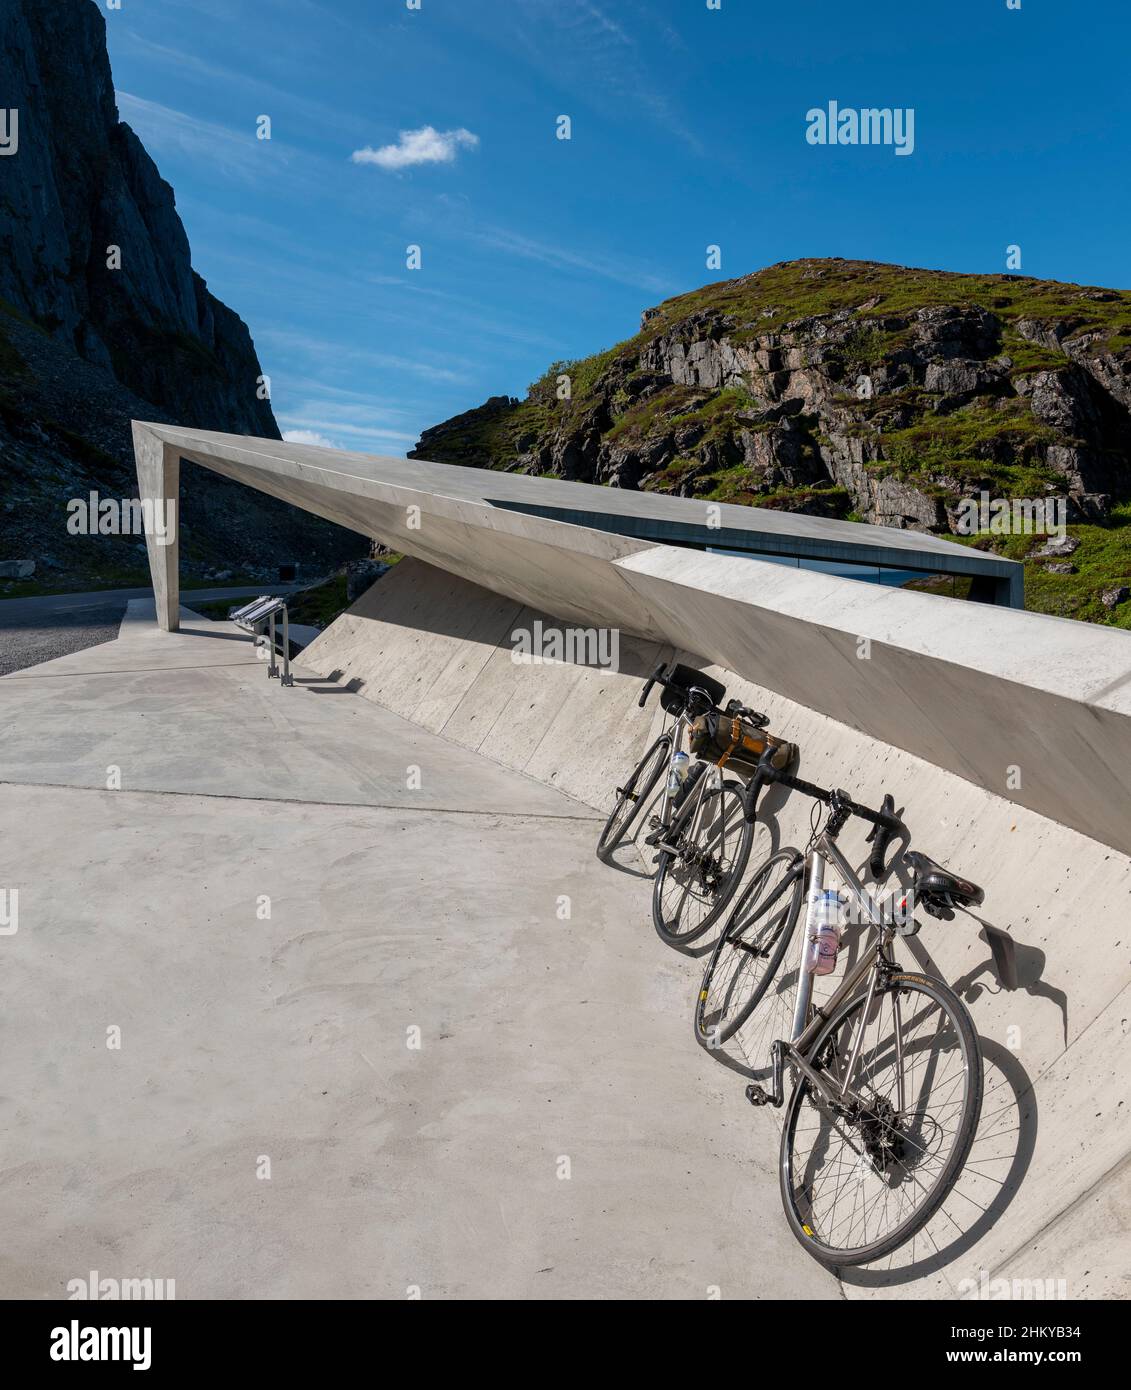 Bukkekjerka aire de repos, la Route panoramique de la Norvège, d'Andøya, Norvège Vesteralen conçu par l'architecte Morfeus Arkitekter. Banque D'Images